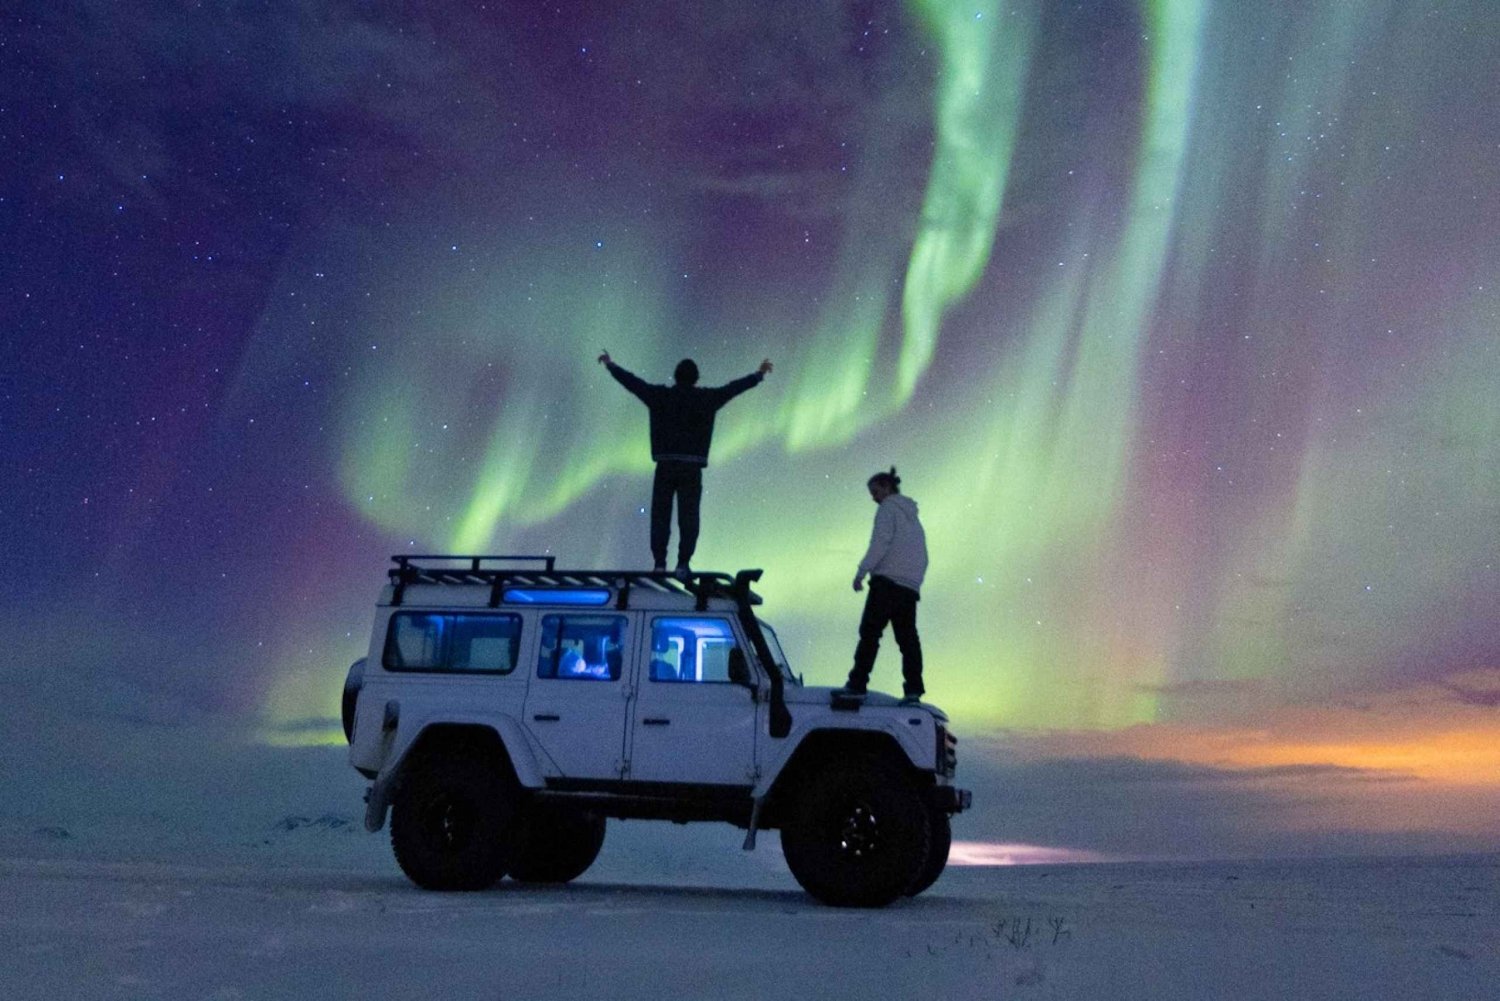 De Reykjavik: Excursão particular e fotografias da aurora boreal